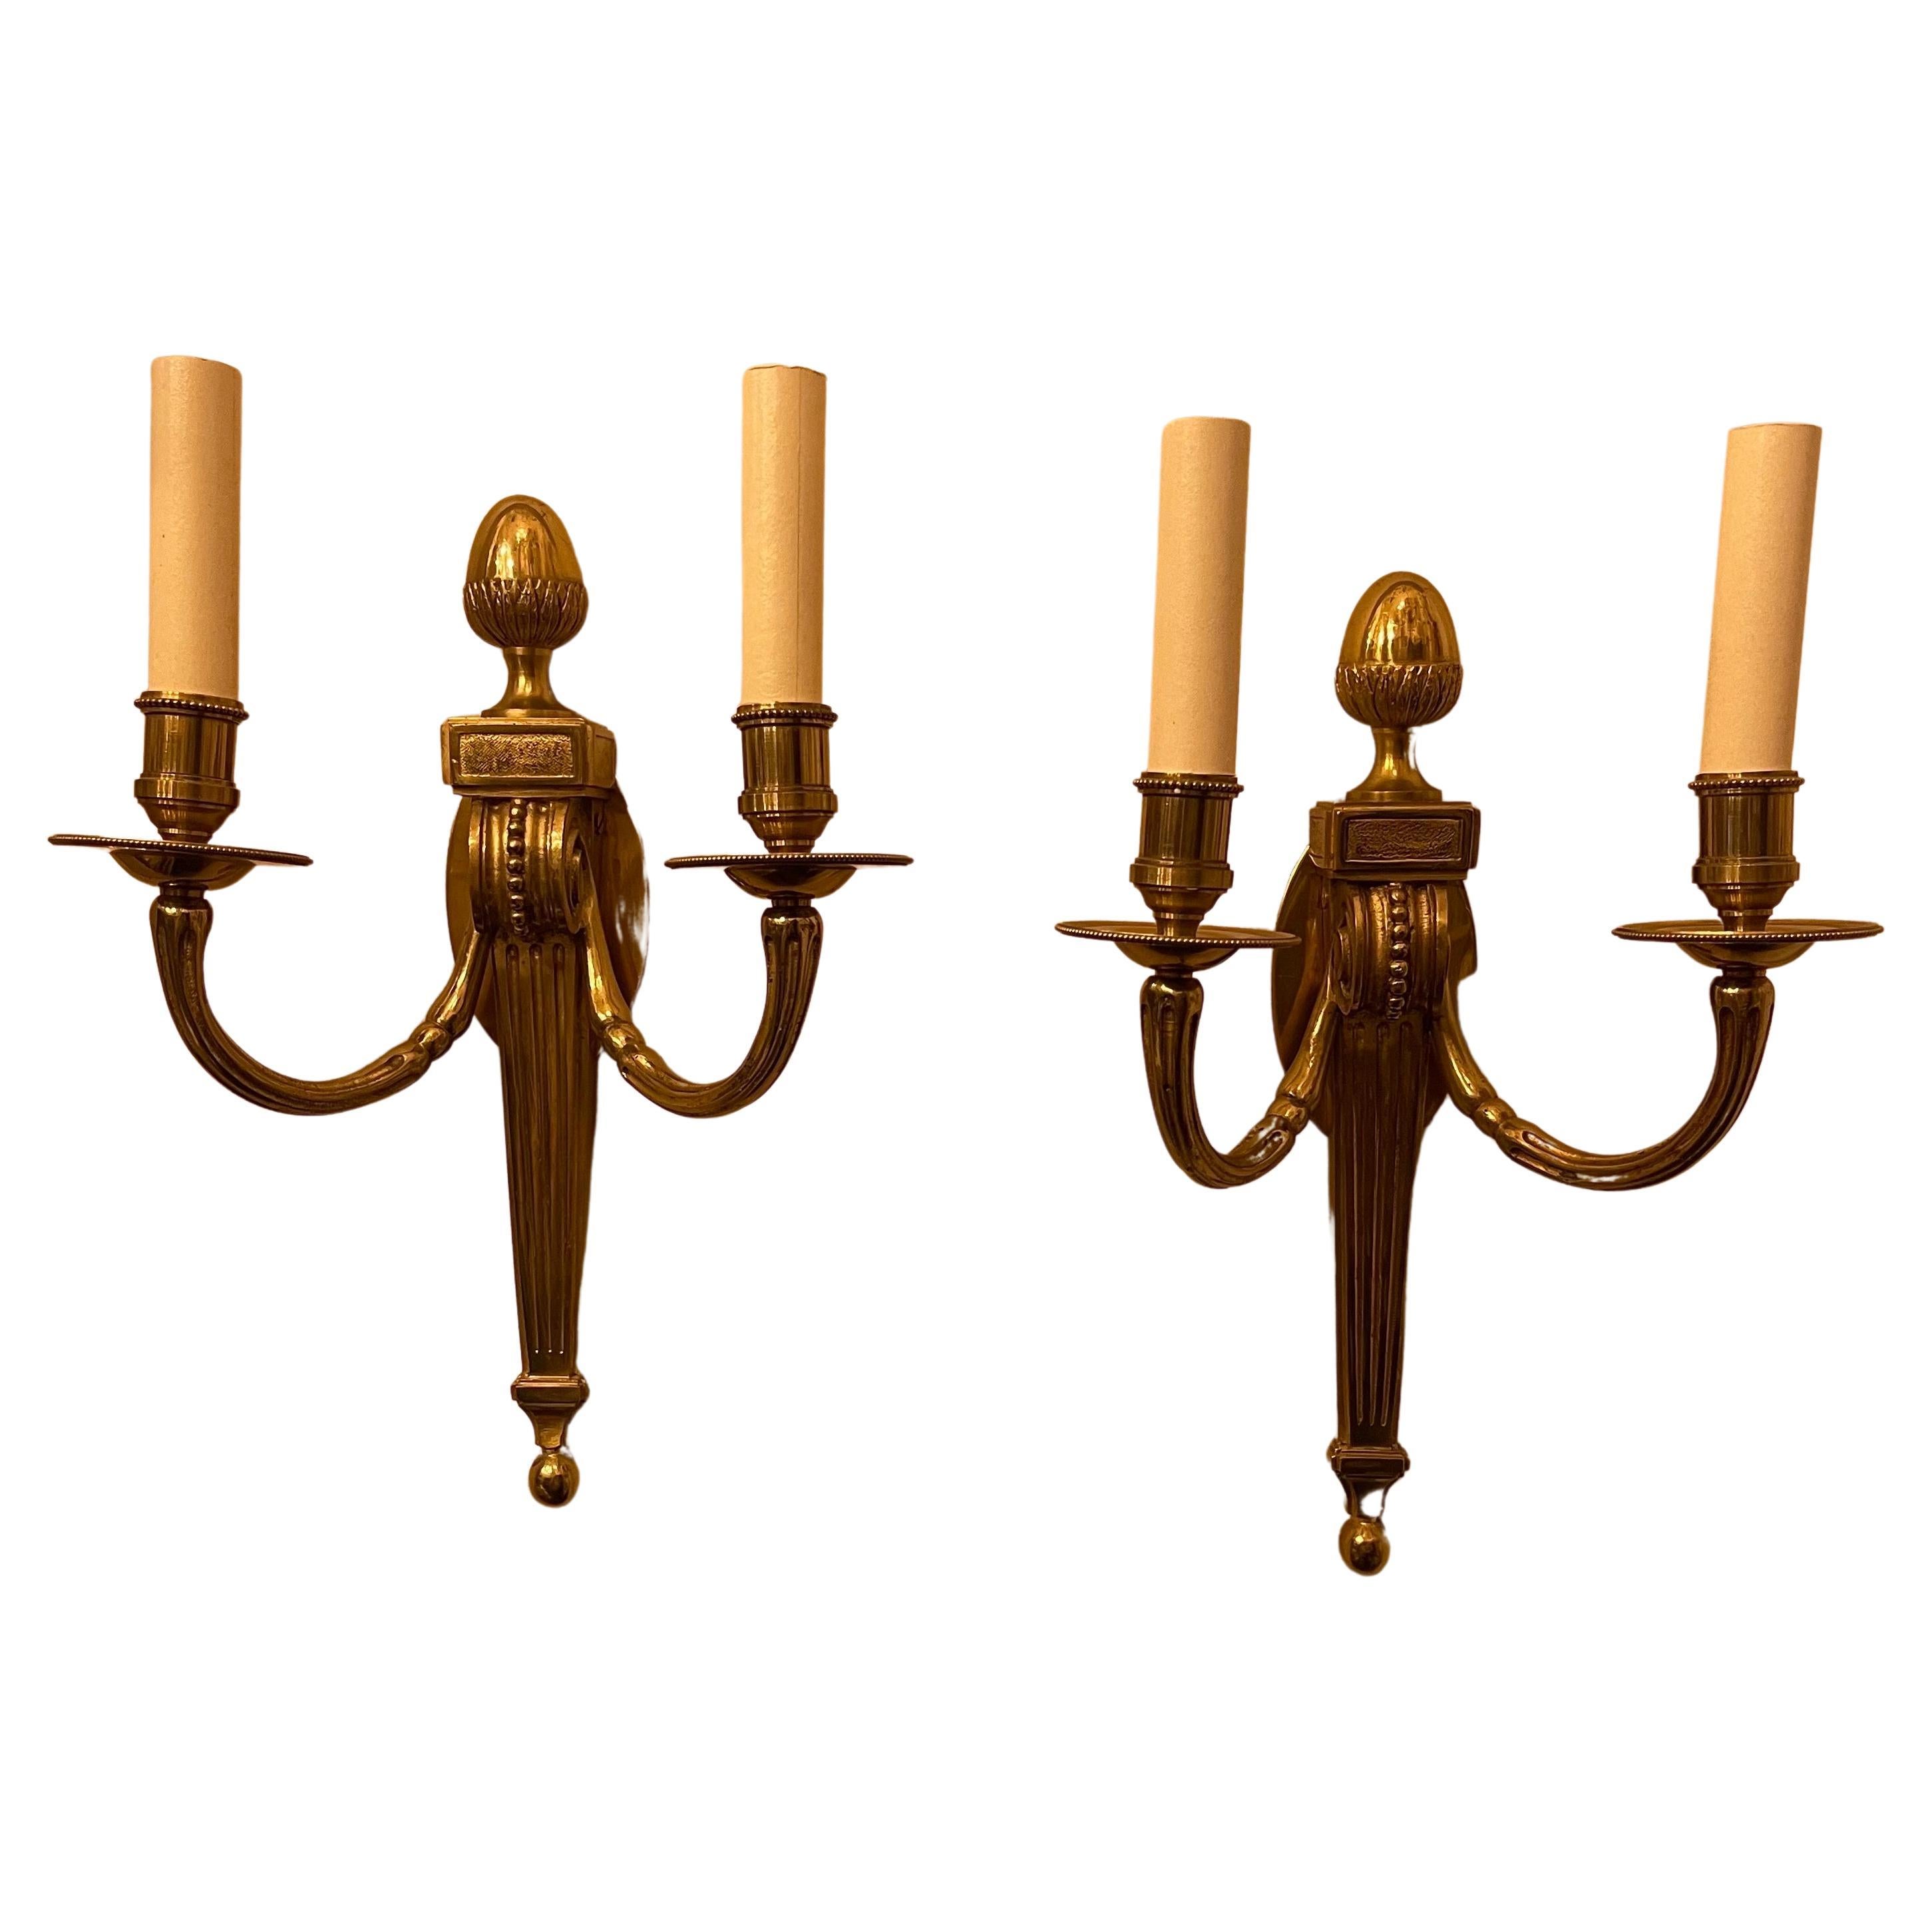 Paire d'appliques à fleuron en bronze de style Empire français néoclassique Vaughan Designs